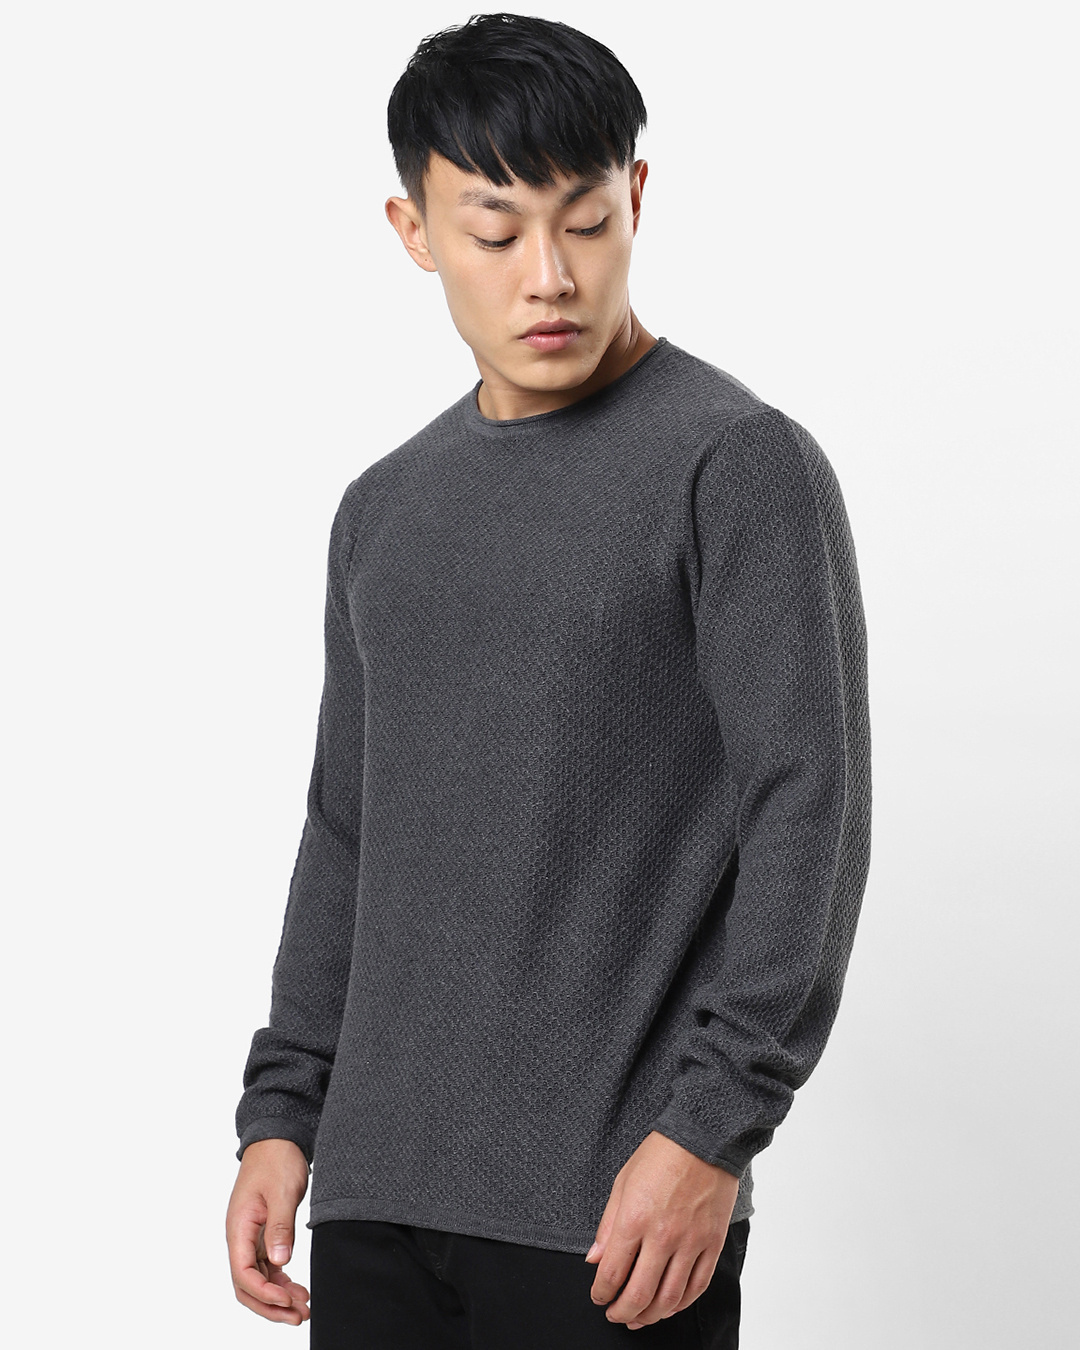 Men’s Anthra Melange Flat Knits Sweater